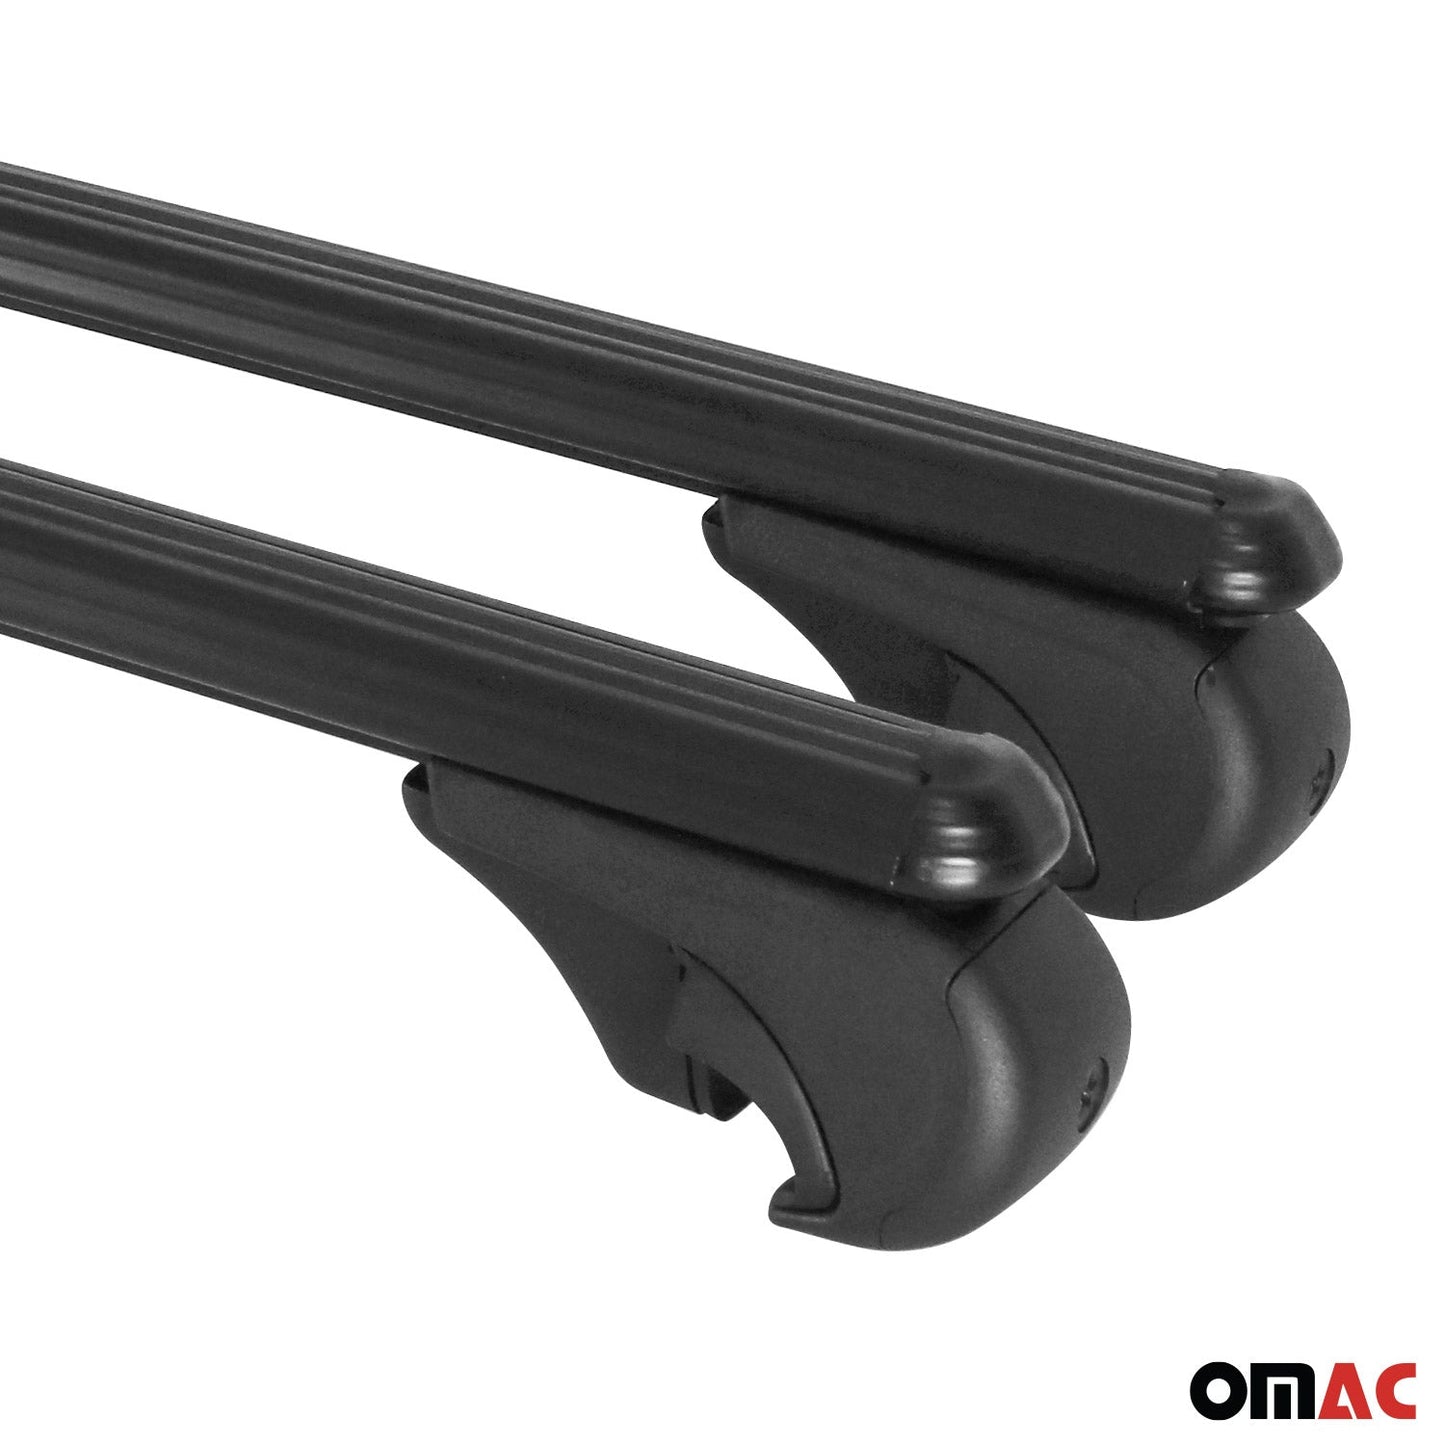 OMAC Roof Racks Cross Bars Luggage Carrier Aluminium Adjustable Black Set FBA9696929MB